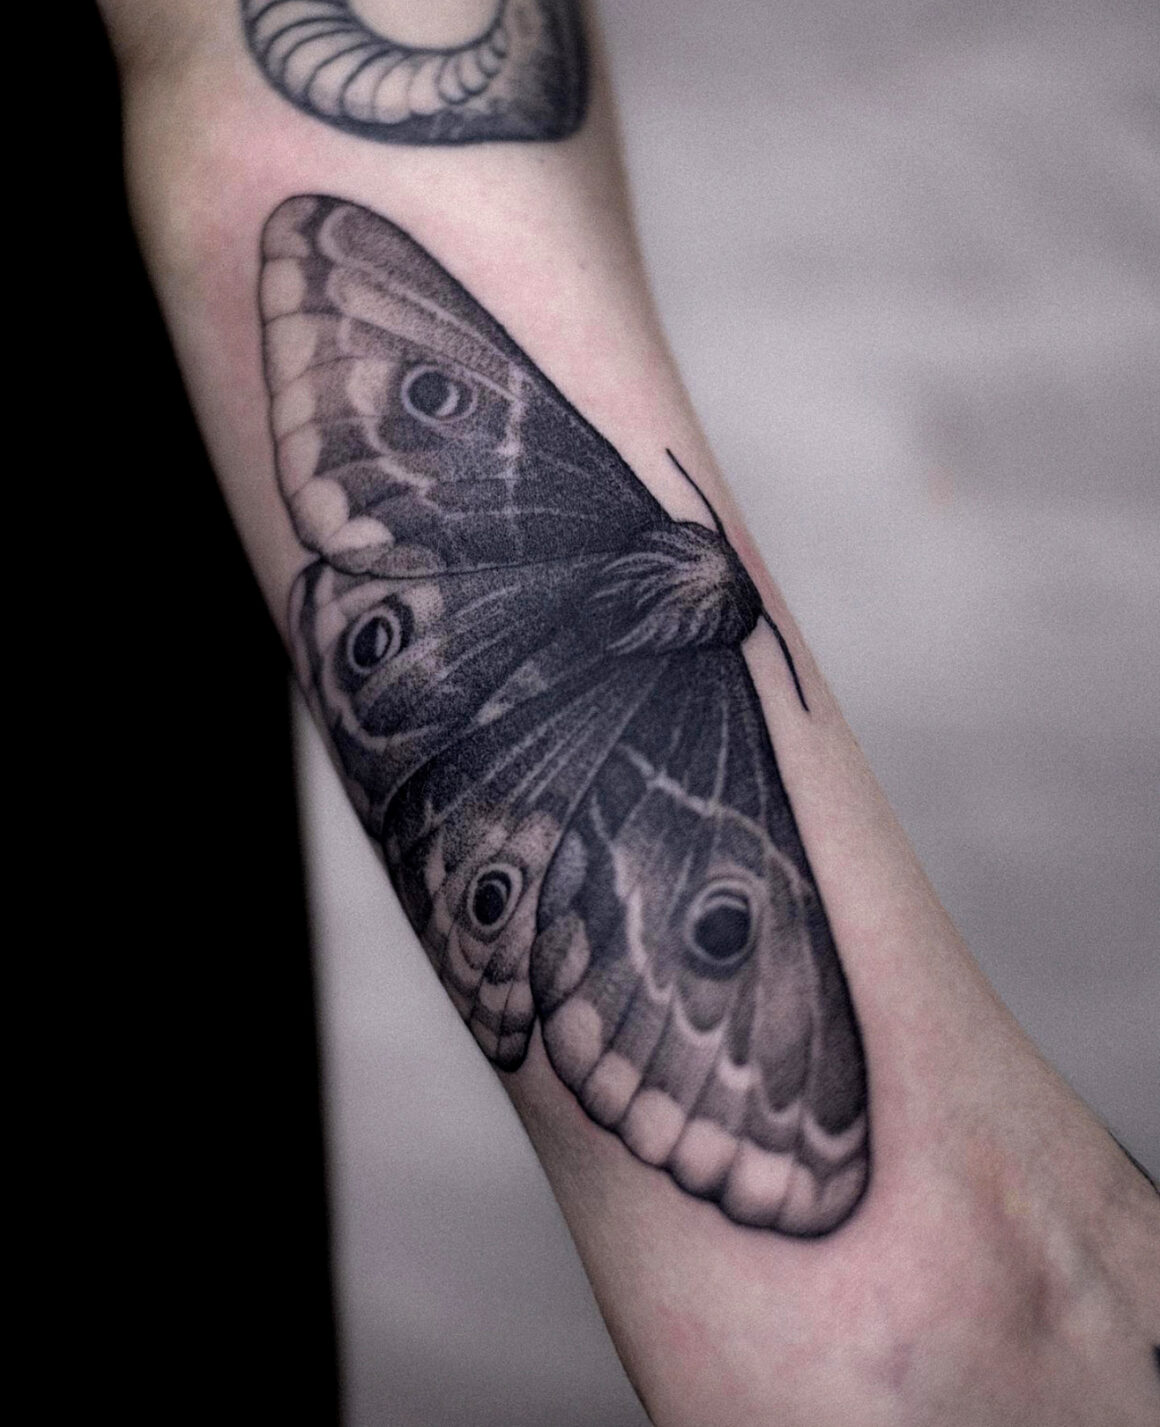 Tattoo by Alena Zozulenko, @zozutattoo